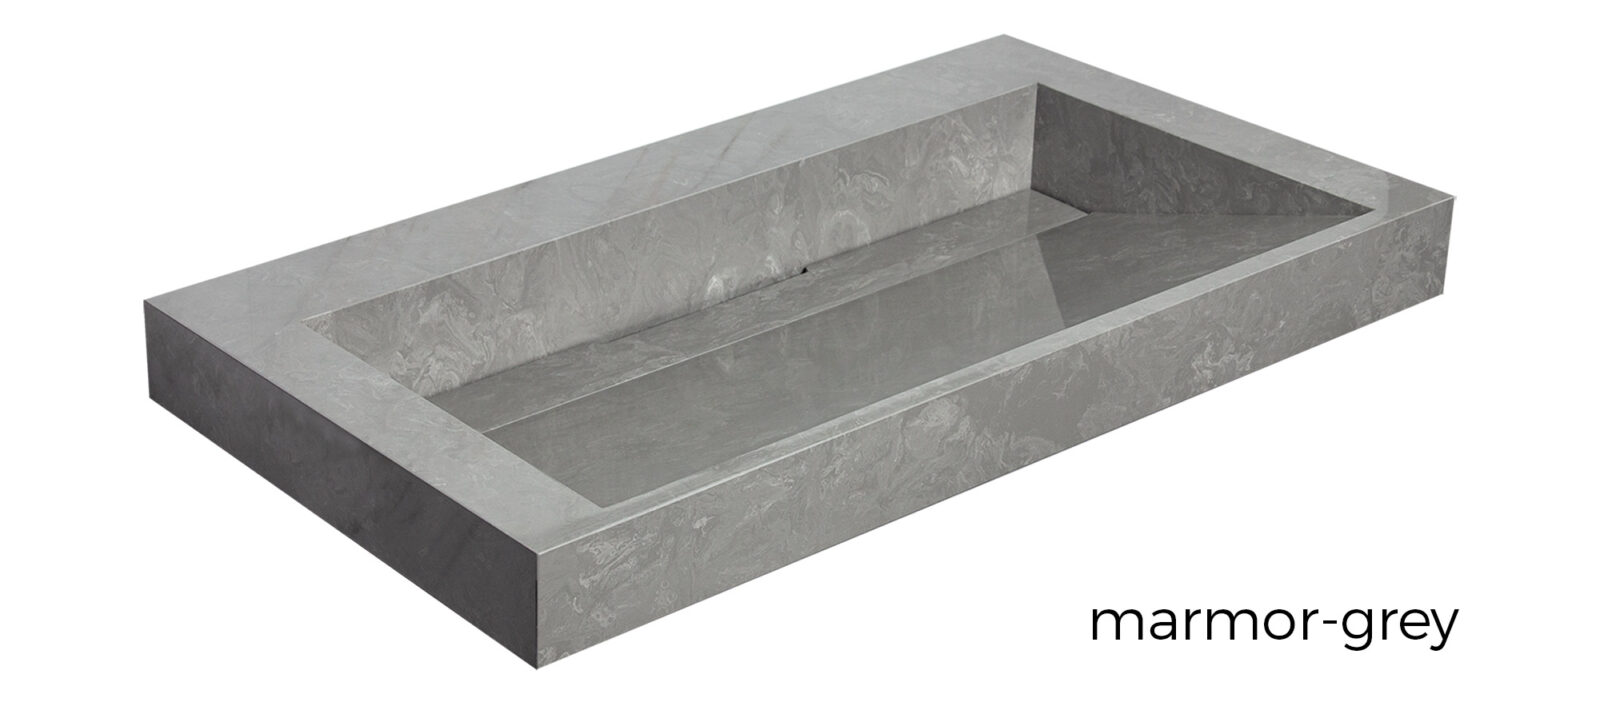 integrierte-fugenlose-waschbecken-mineralwerkstoff-waschtisch-möbelwaschtisch-marmor-grey